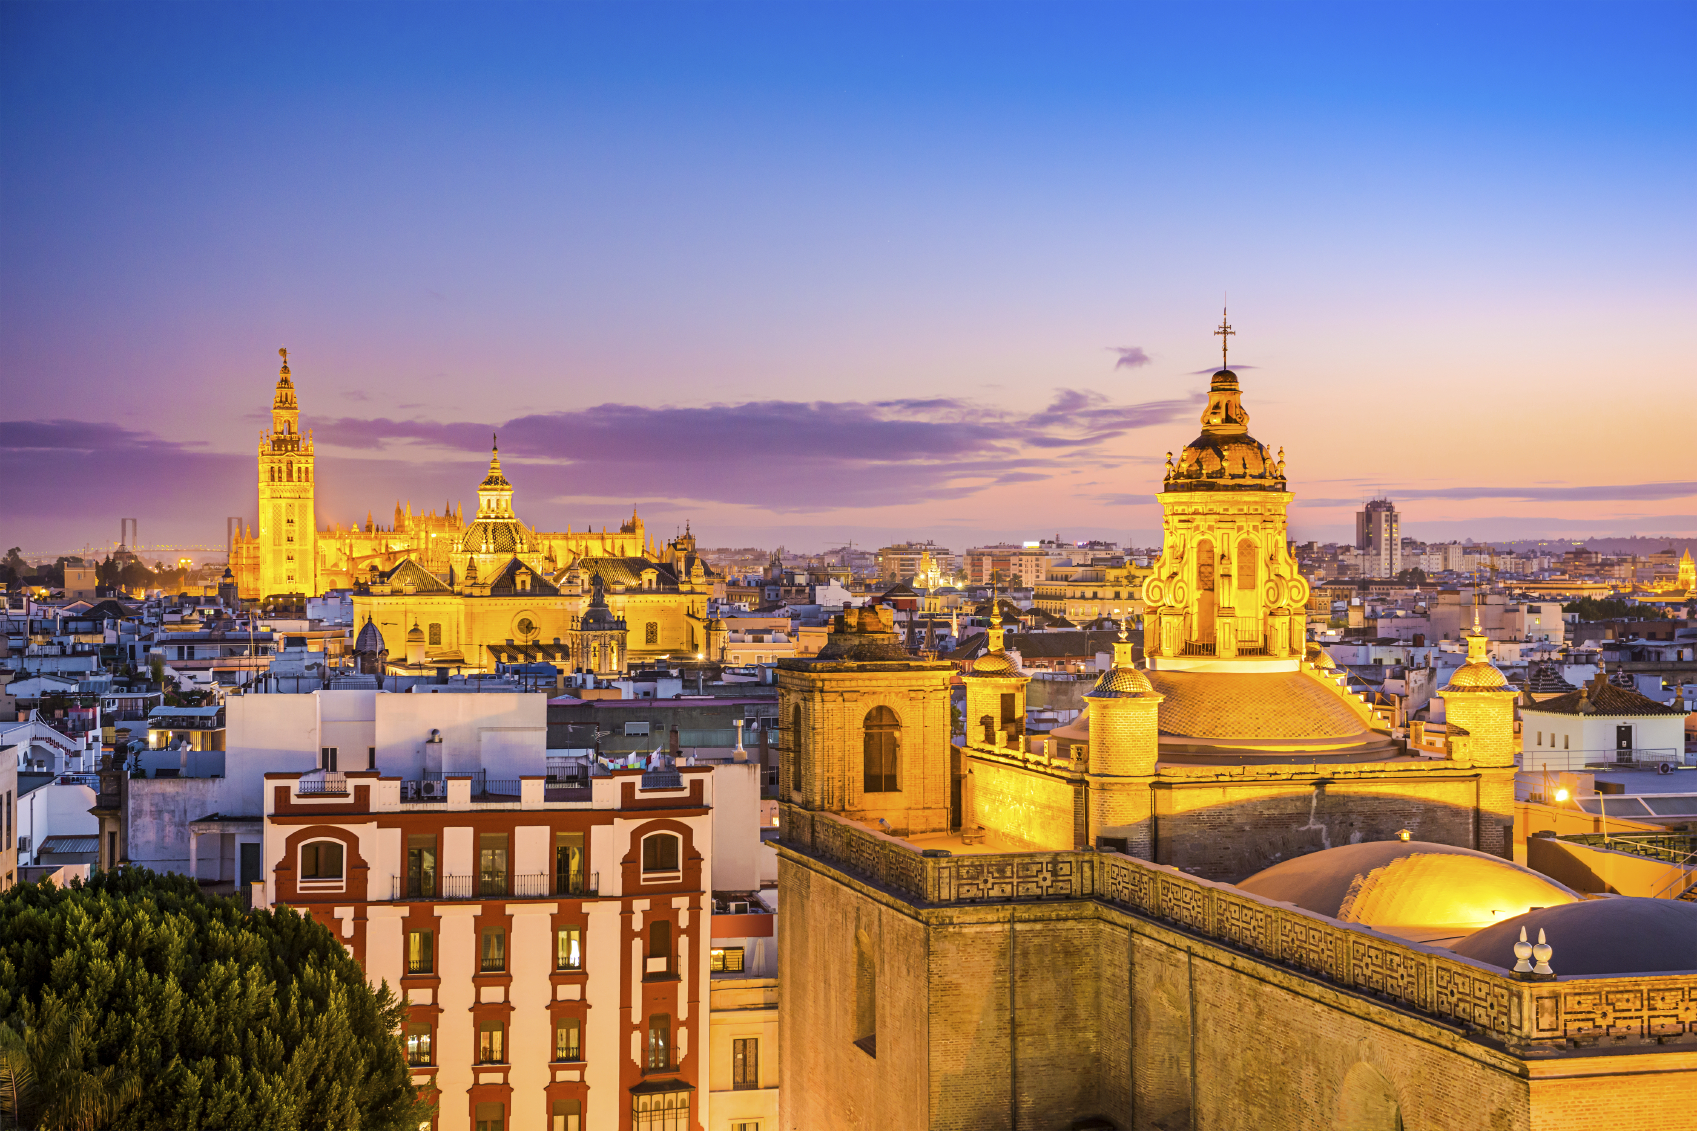 Seville at dusk (Getty Images)